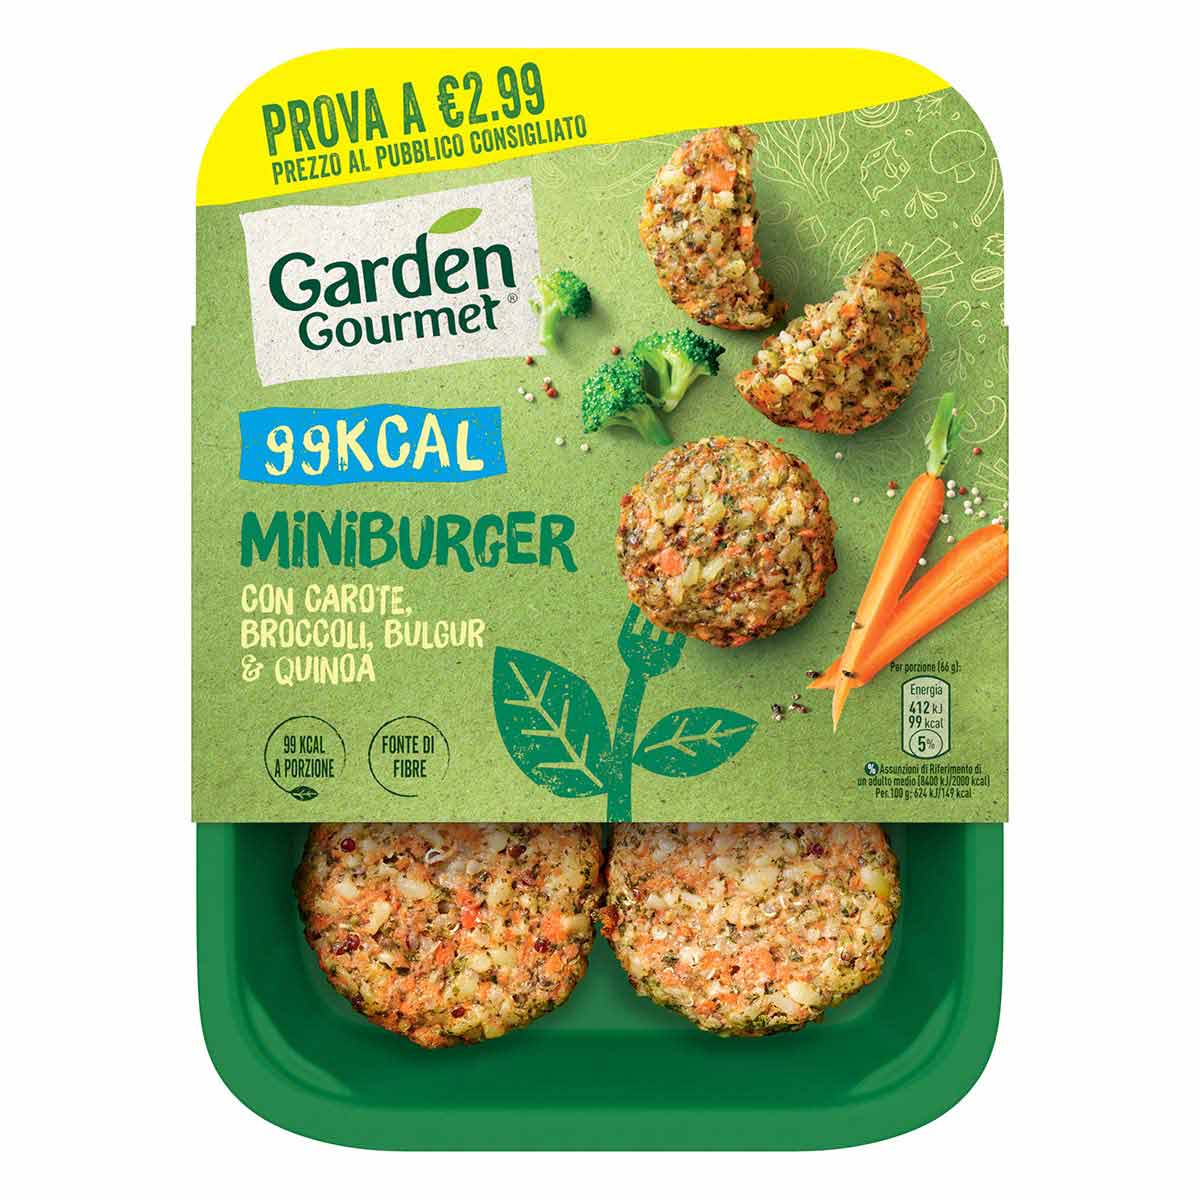 Garden Gourmet Miniburger con Carote, Broccoli, Bulgur e Quinoa